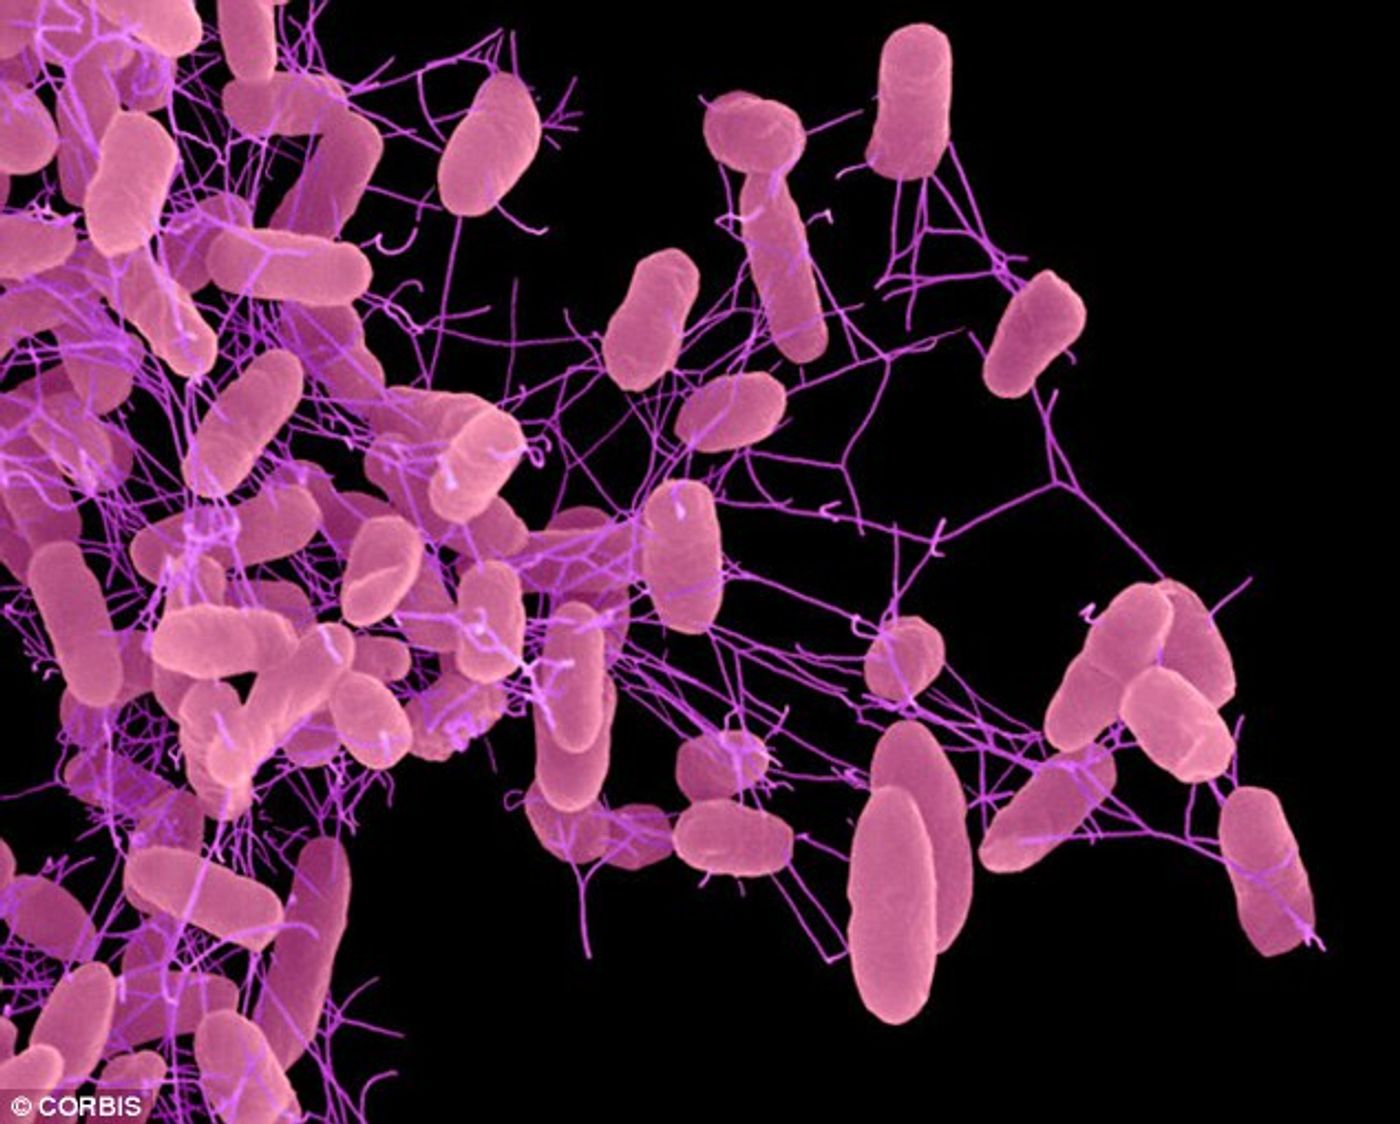 Antibiotics help Salmonella compete with gut flora.